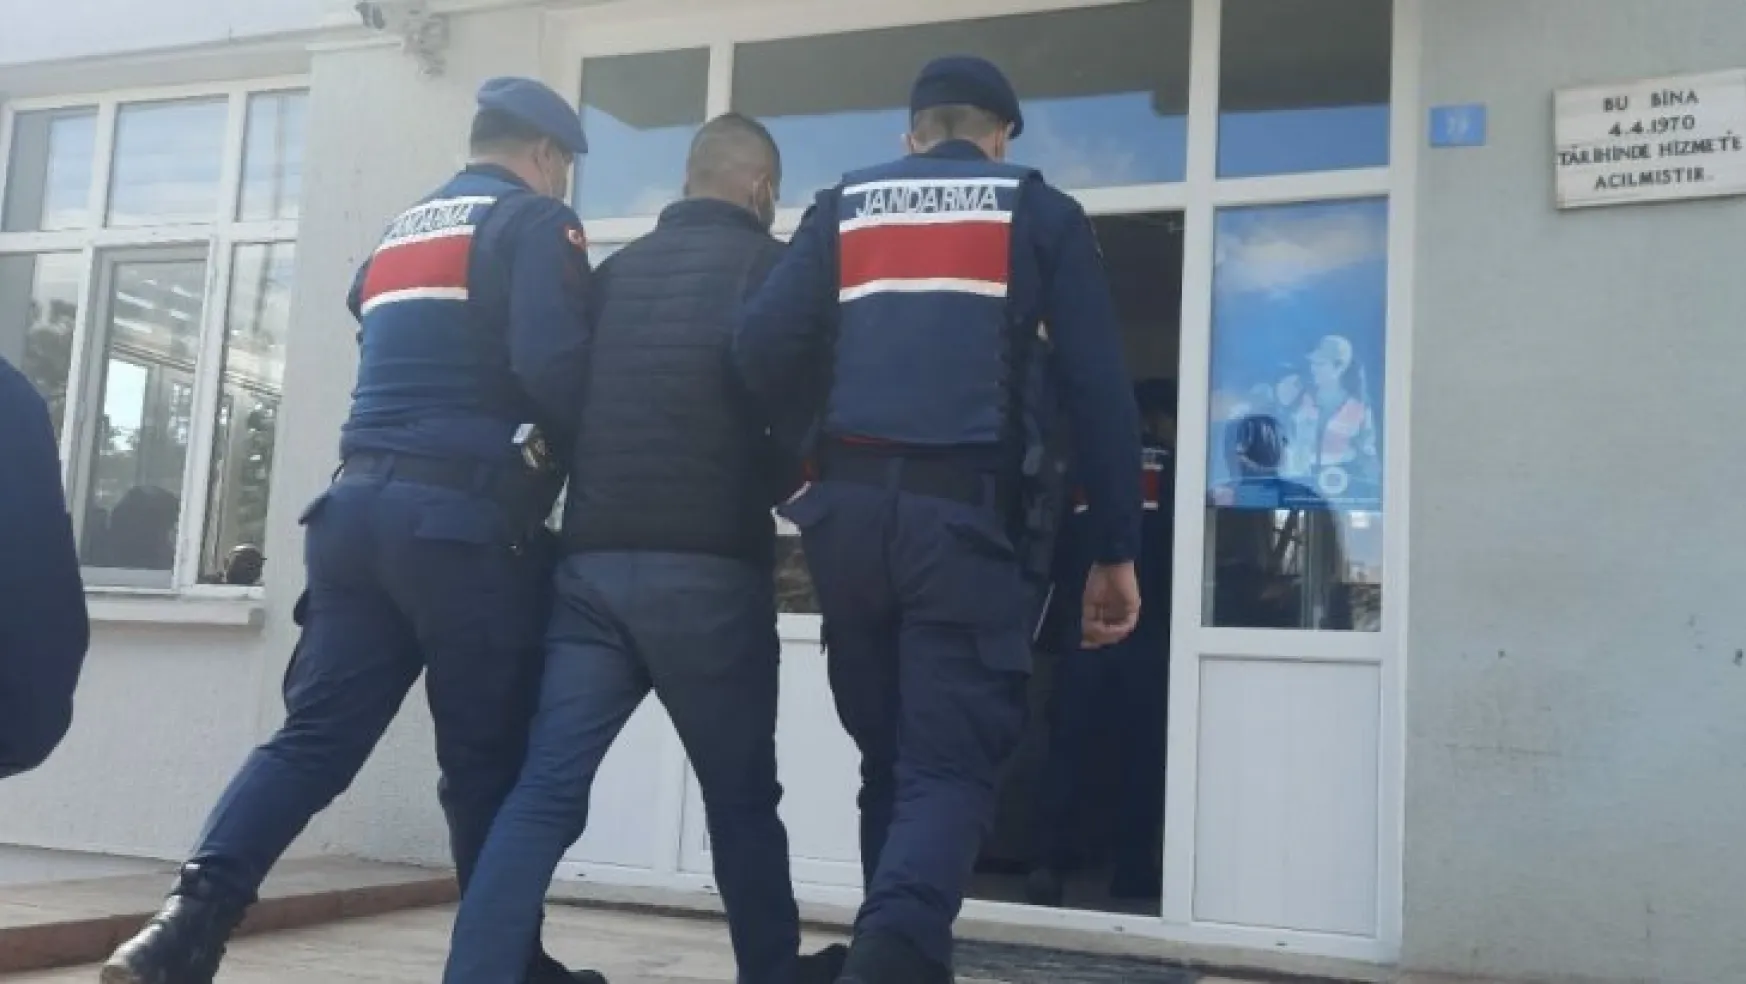 Yeşilhisar'da hırsızlık olayları: 4 tutuklama